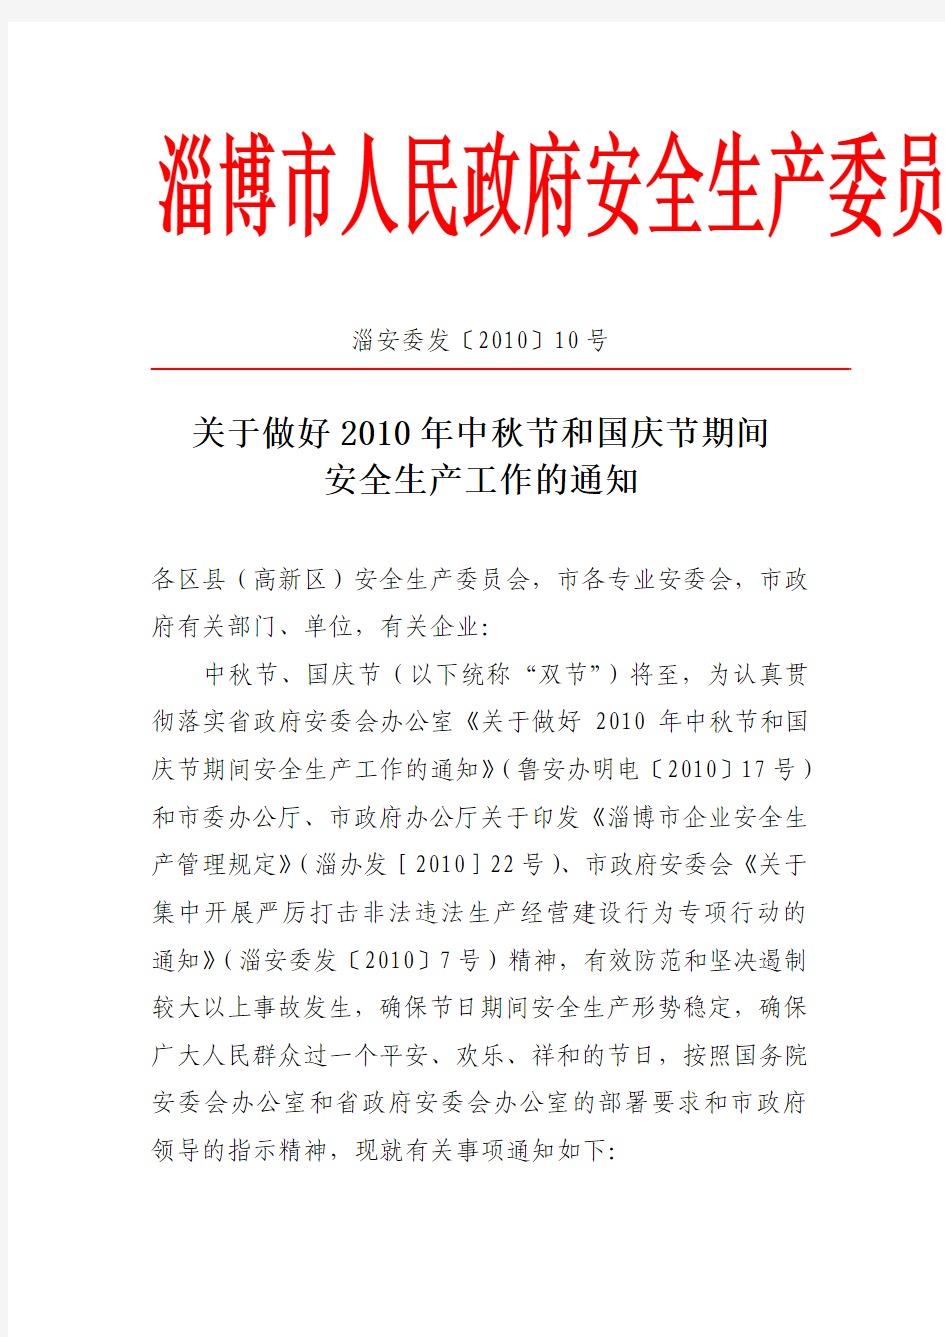 《关于做好2010年中秋节和国庆节期间安全生产工作的通知》的通知